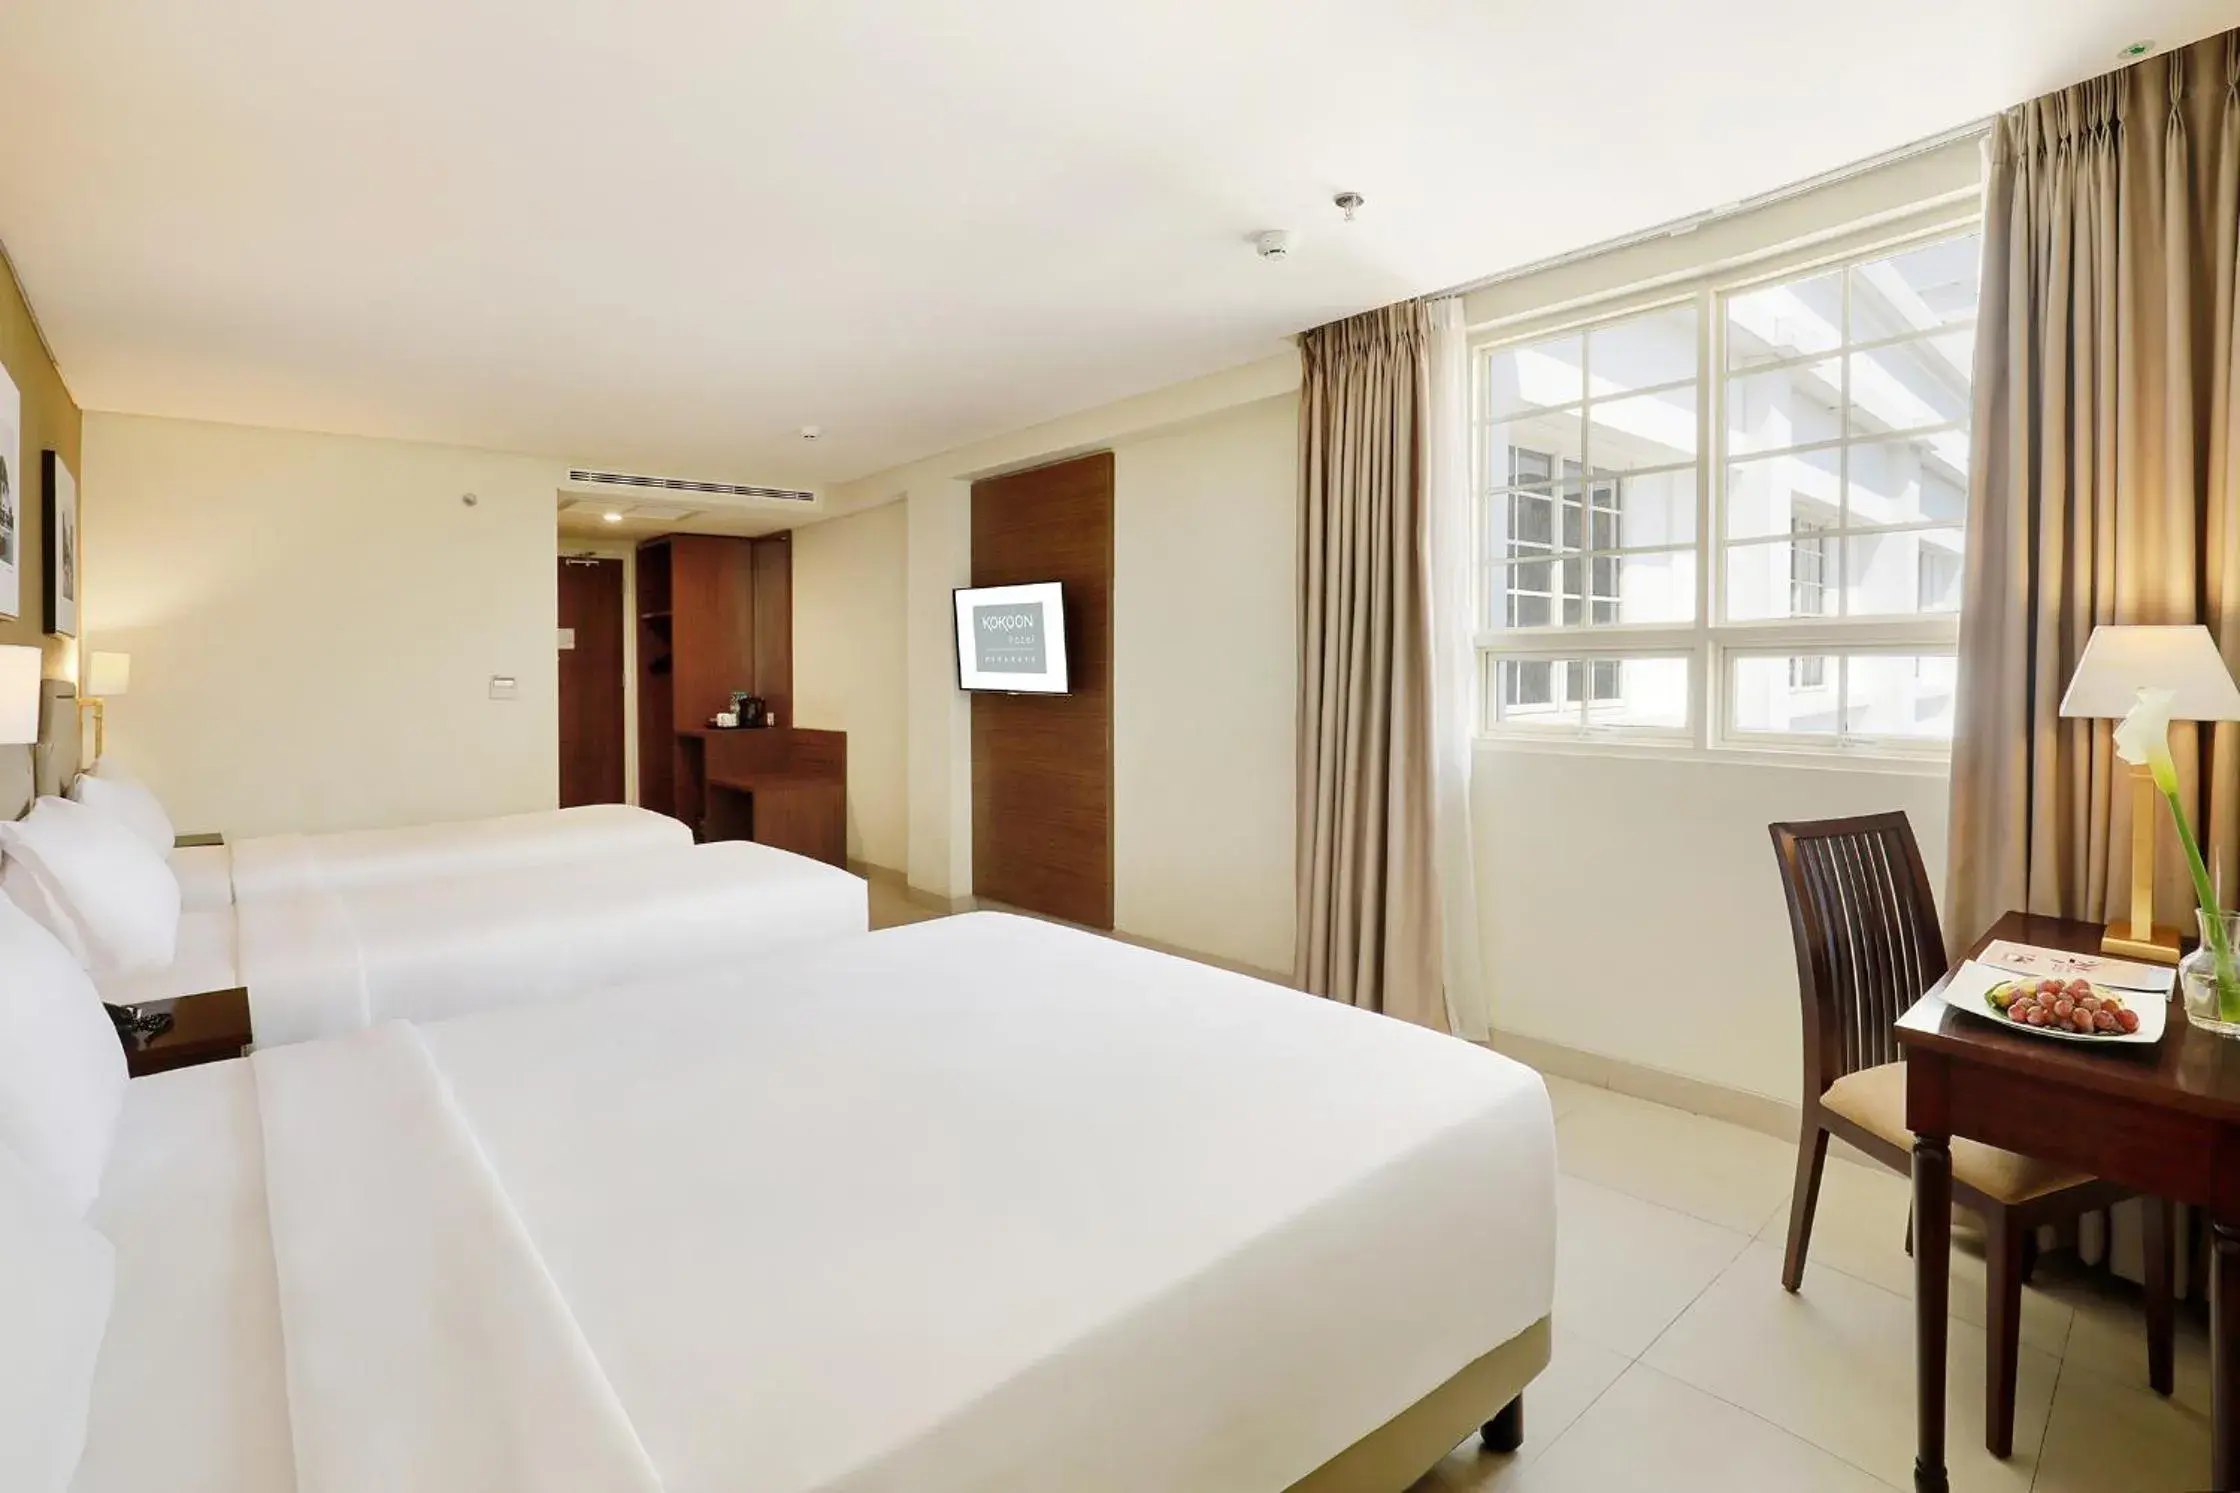 Area and facilities, Bed in Kokoon Hotel Surabaya